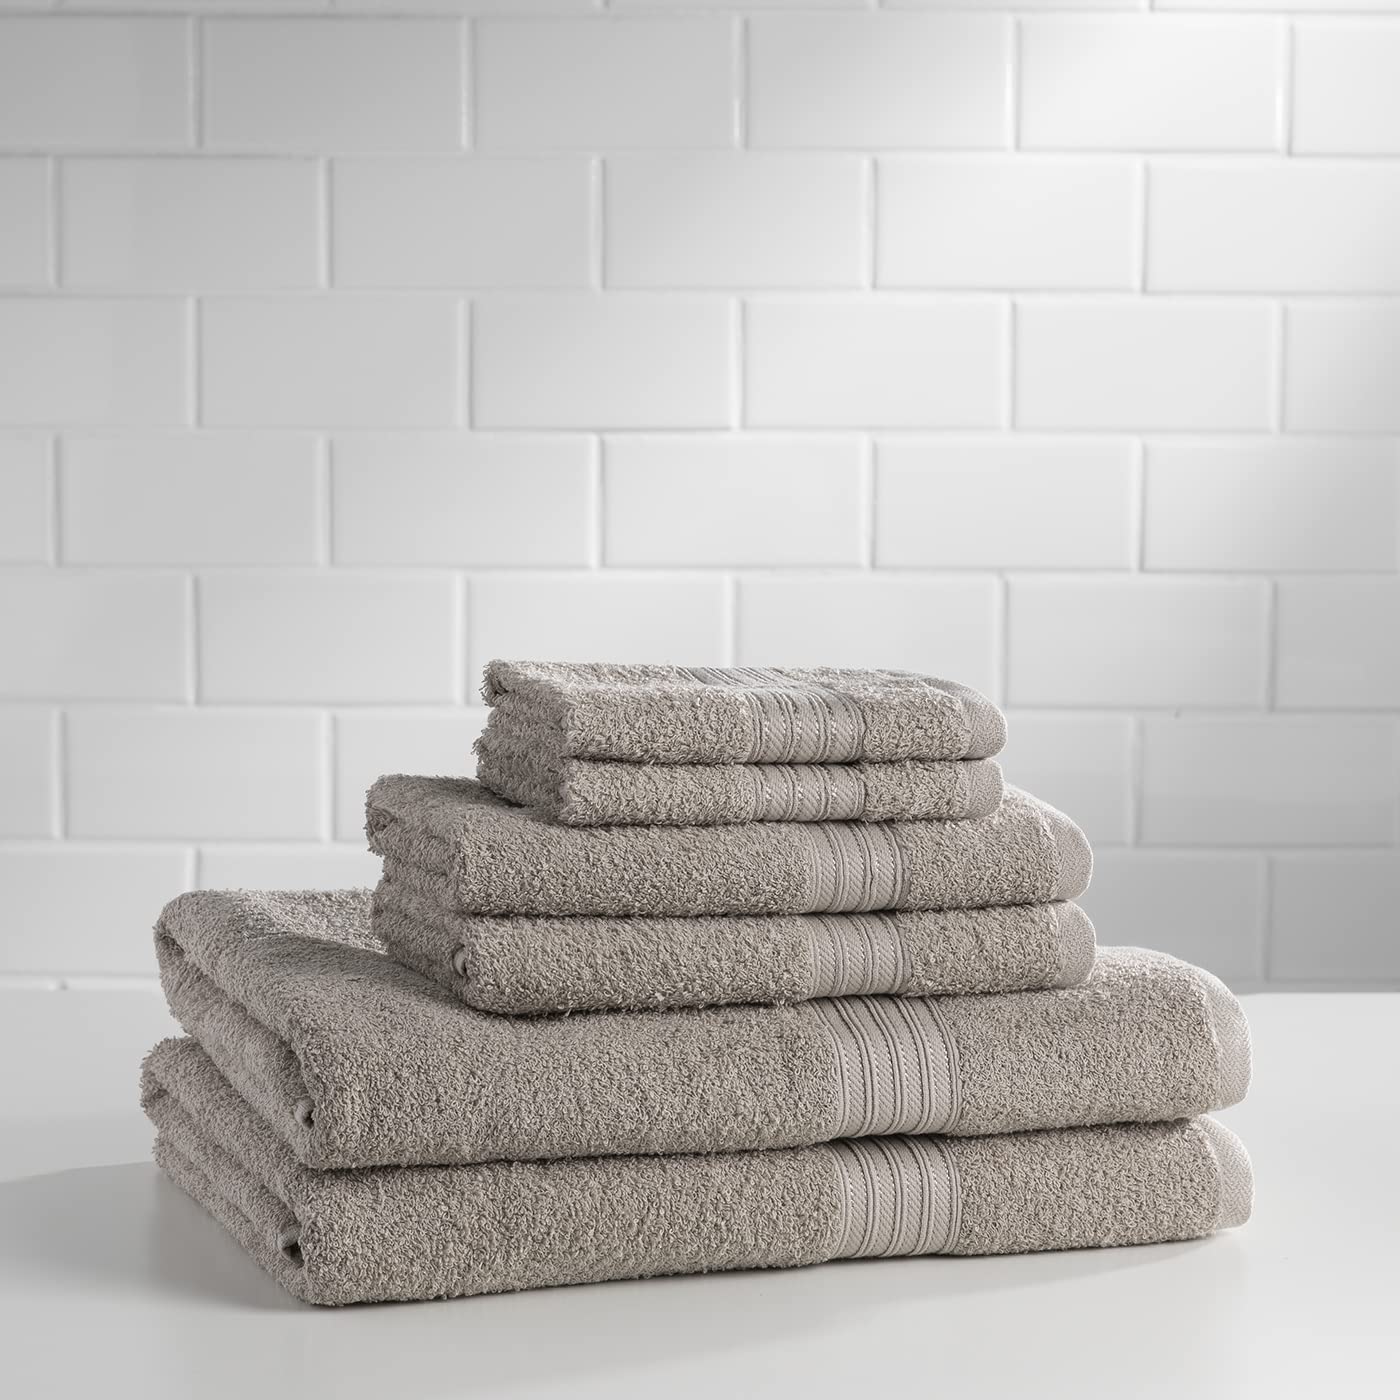 Baltic Linen Majestic Cotton Towels, 2 Bath Towels, 2 Hand Towels, 2 Washcloths, Cabernet, 6-Piece Set